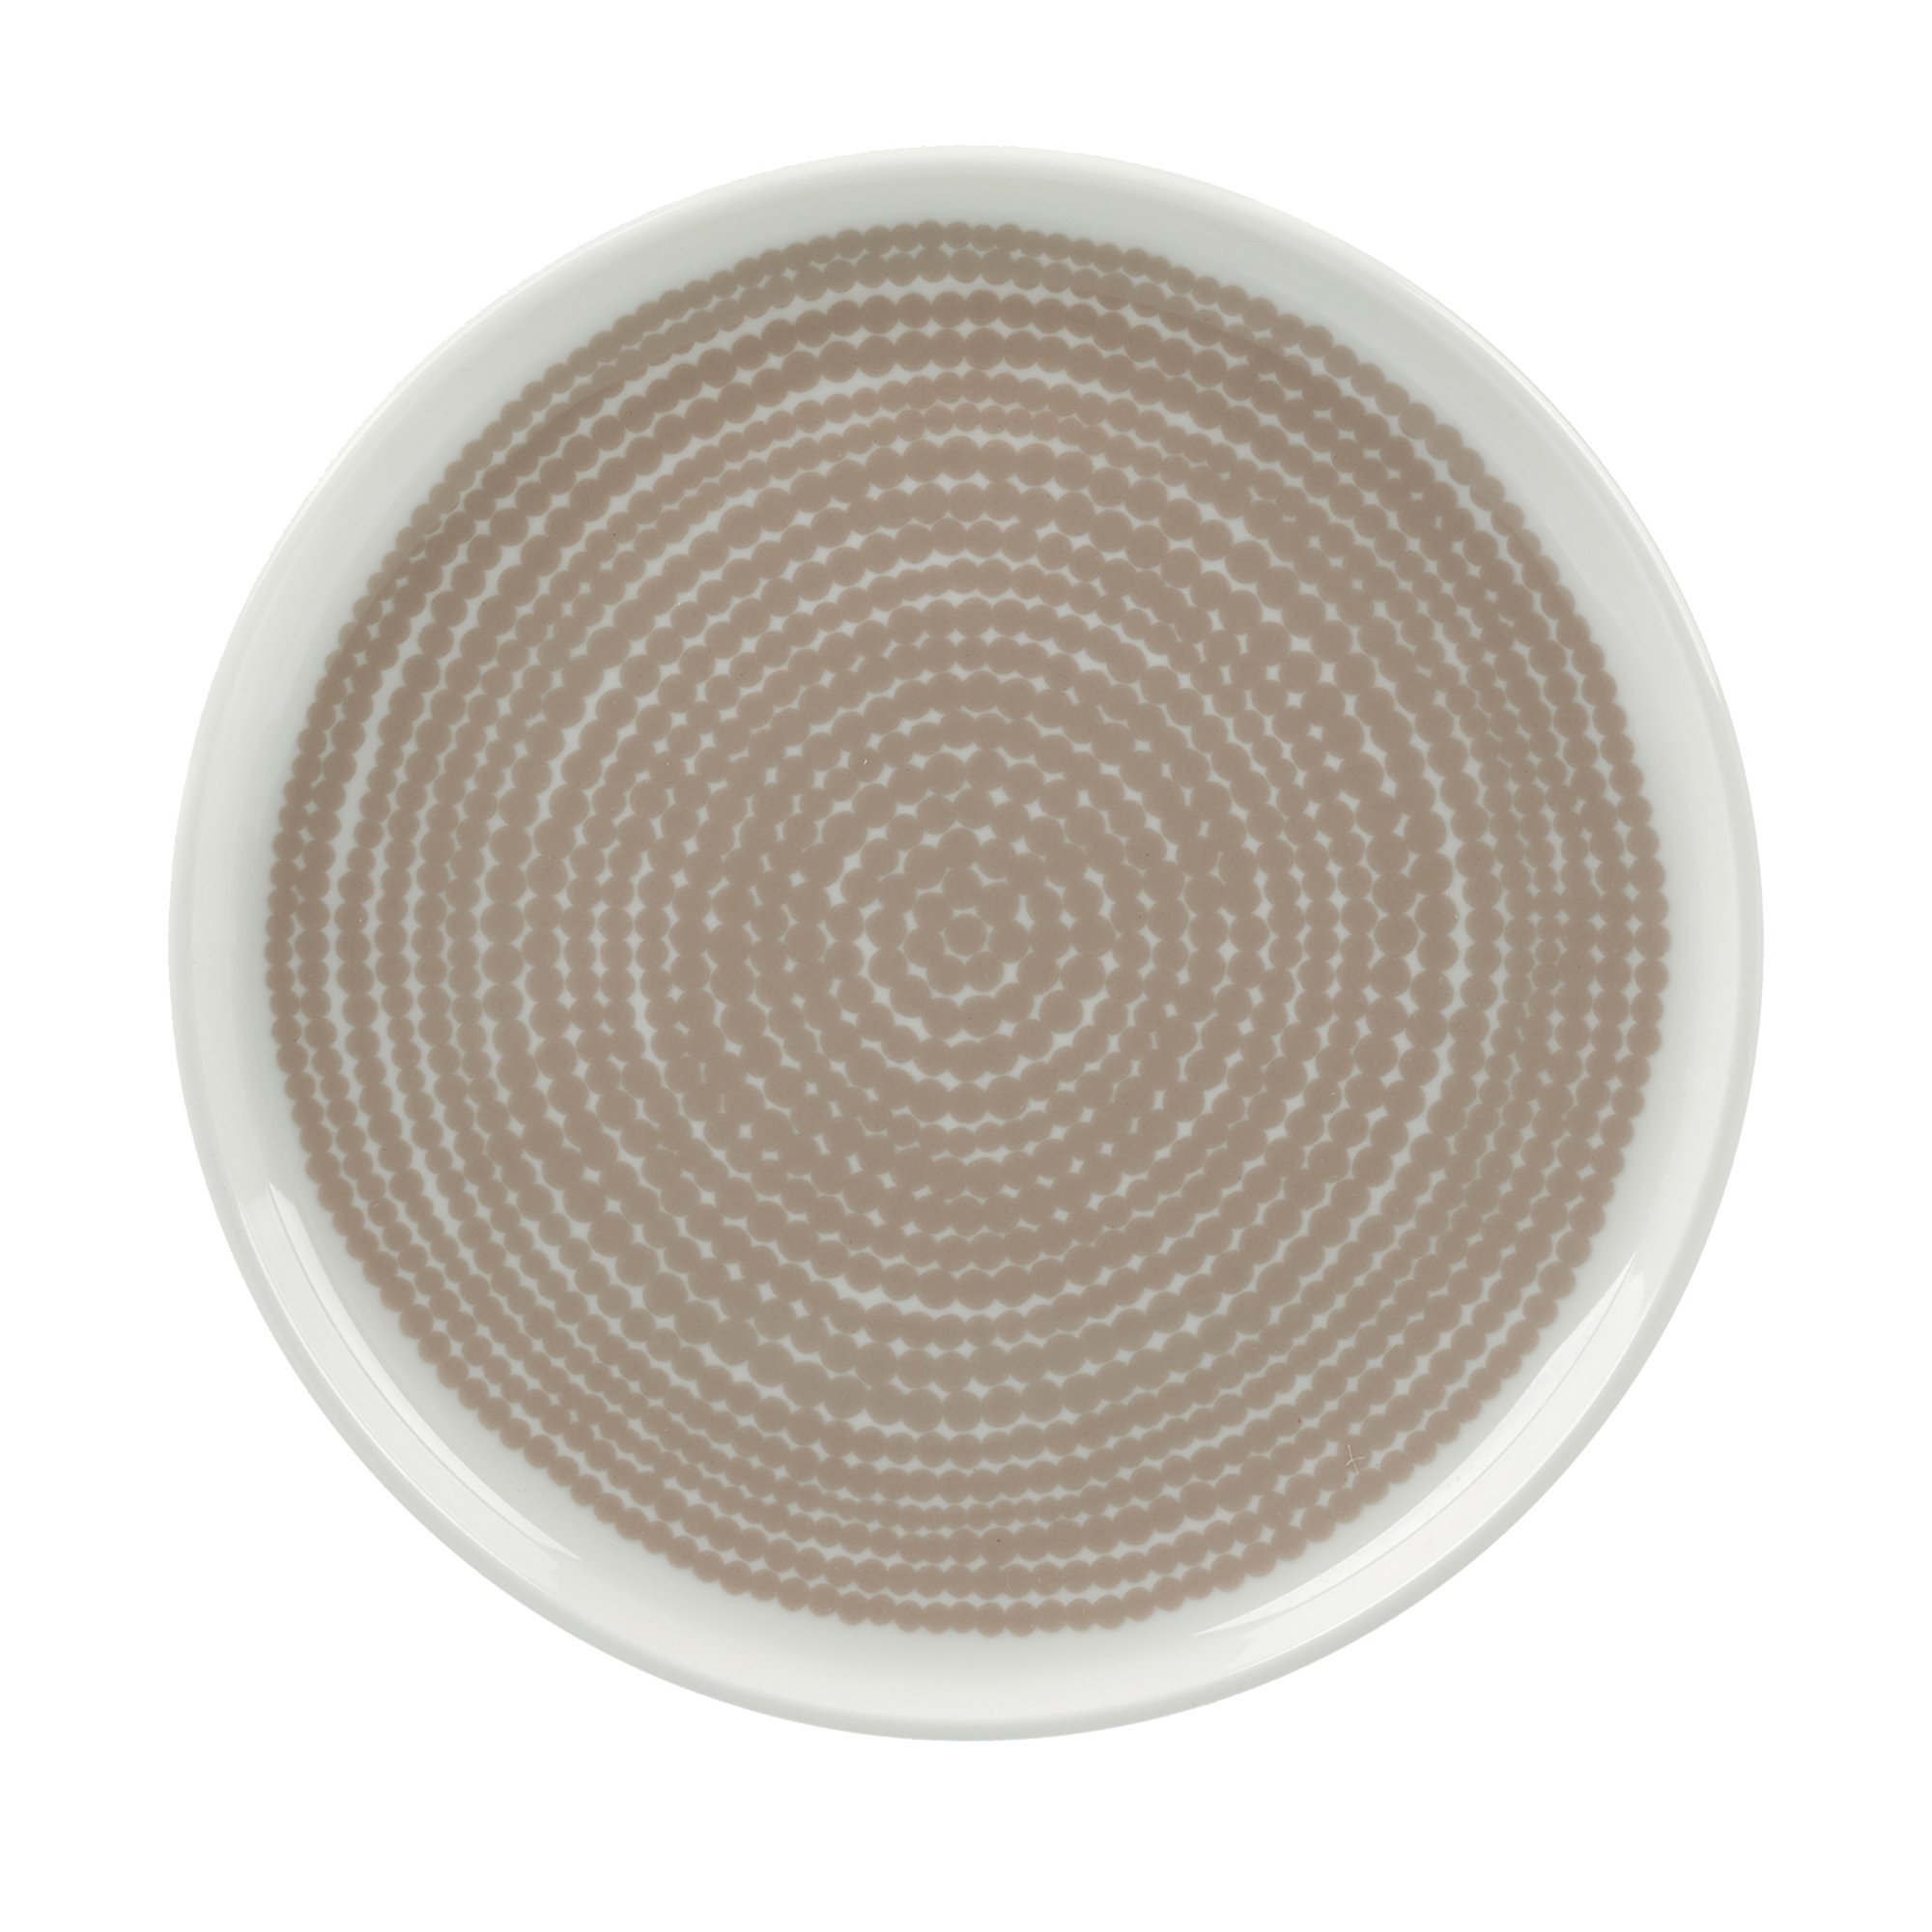 Läs mer om Marimekko Siirtolapuutarha tallrik 13,5 cm, vit/beige